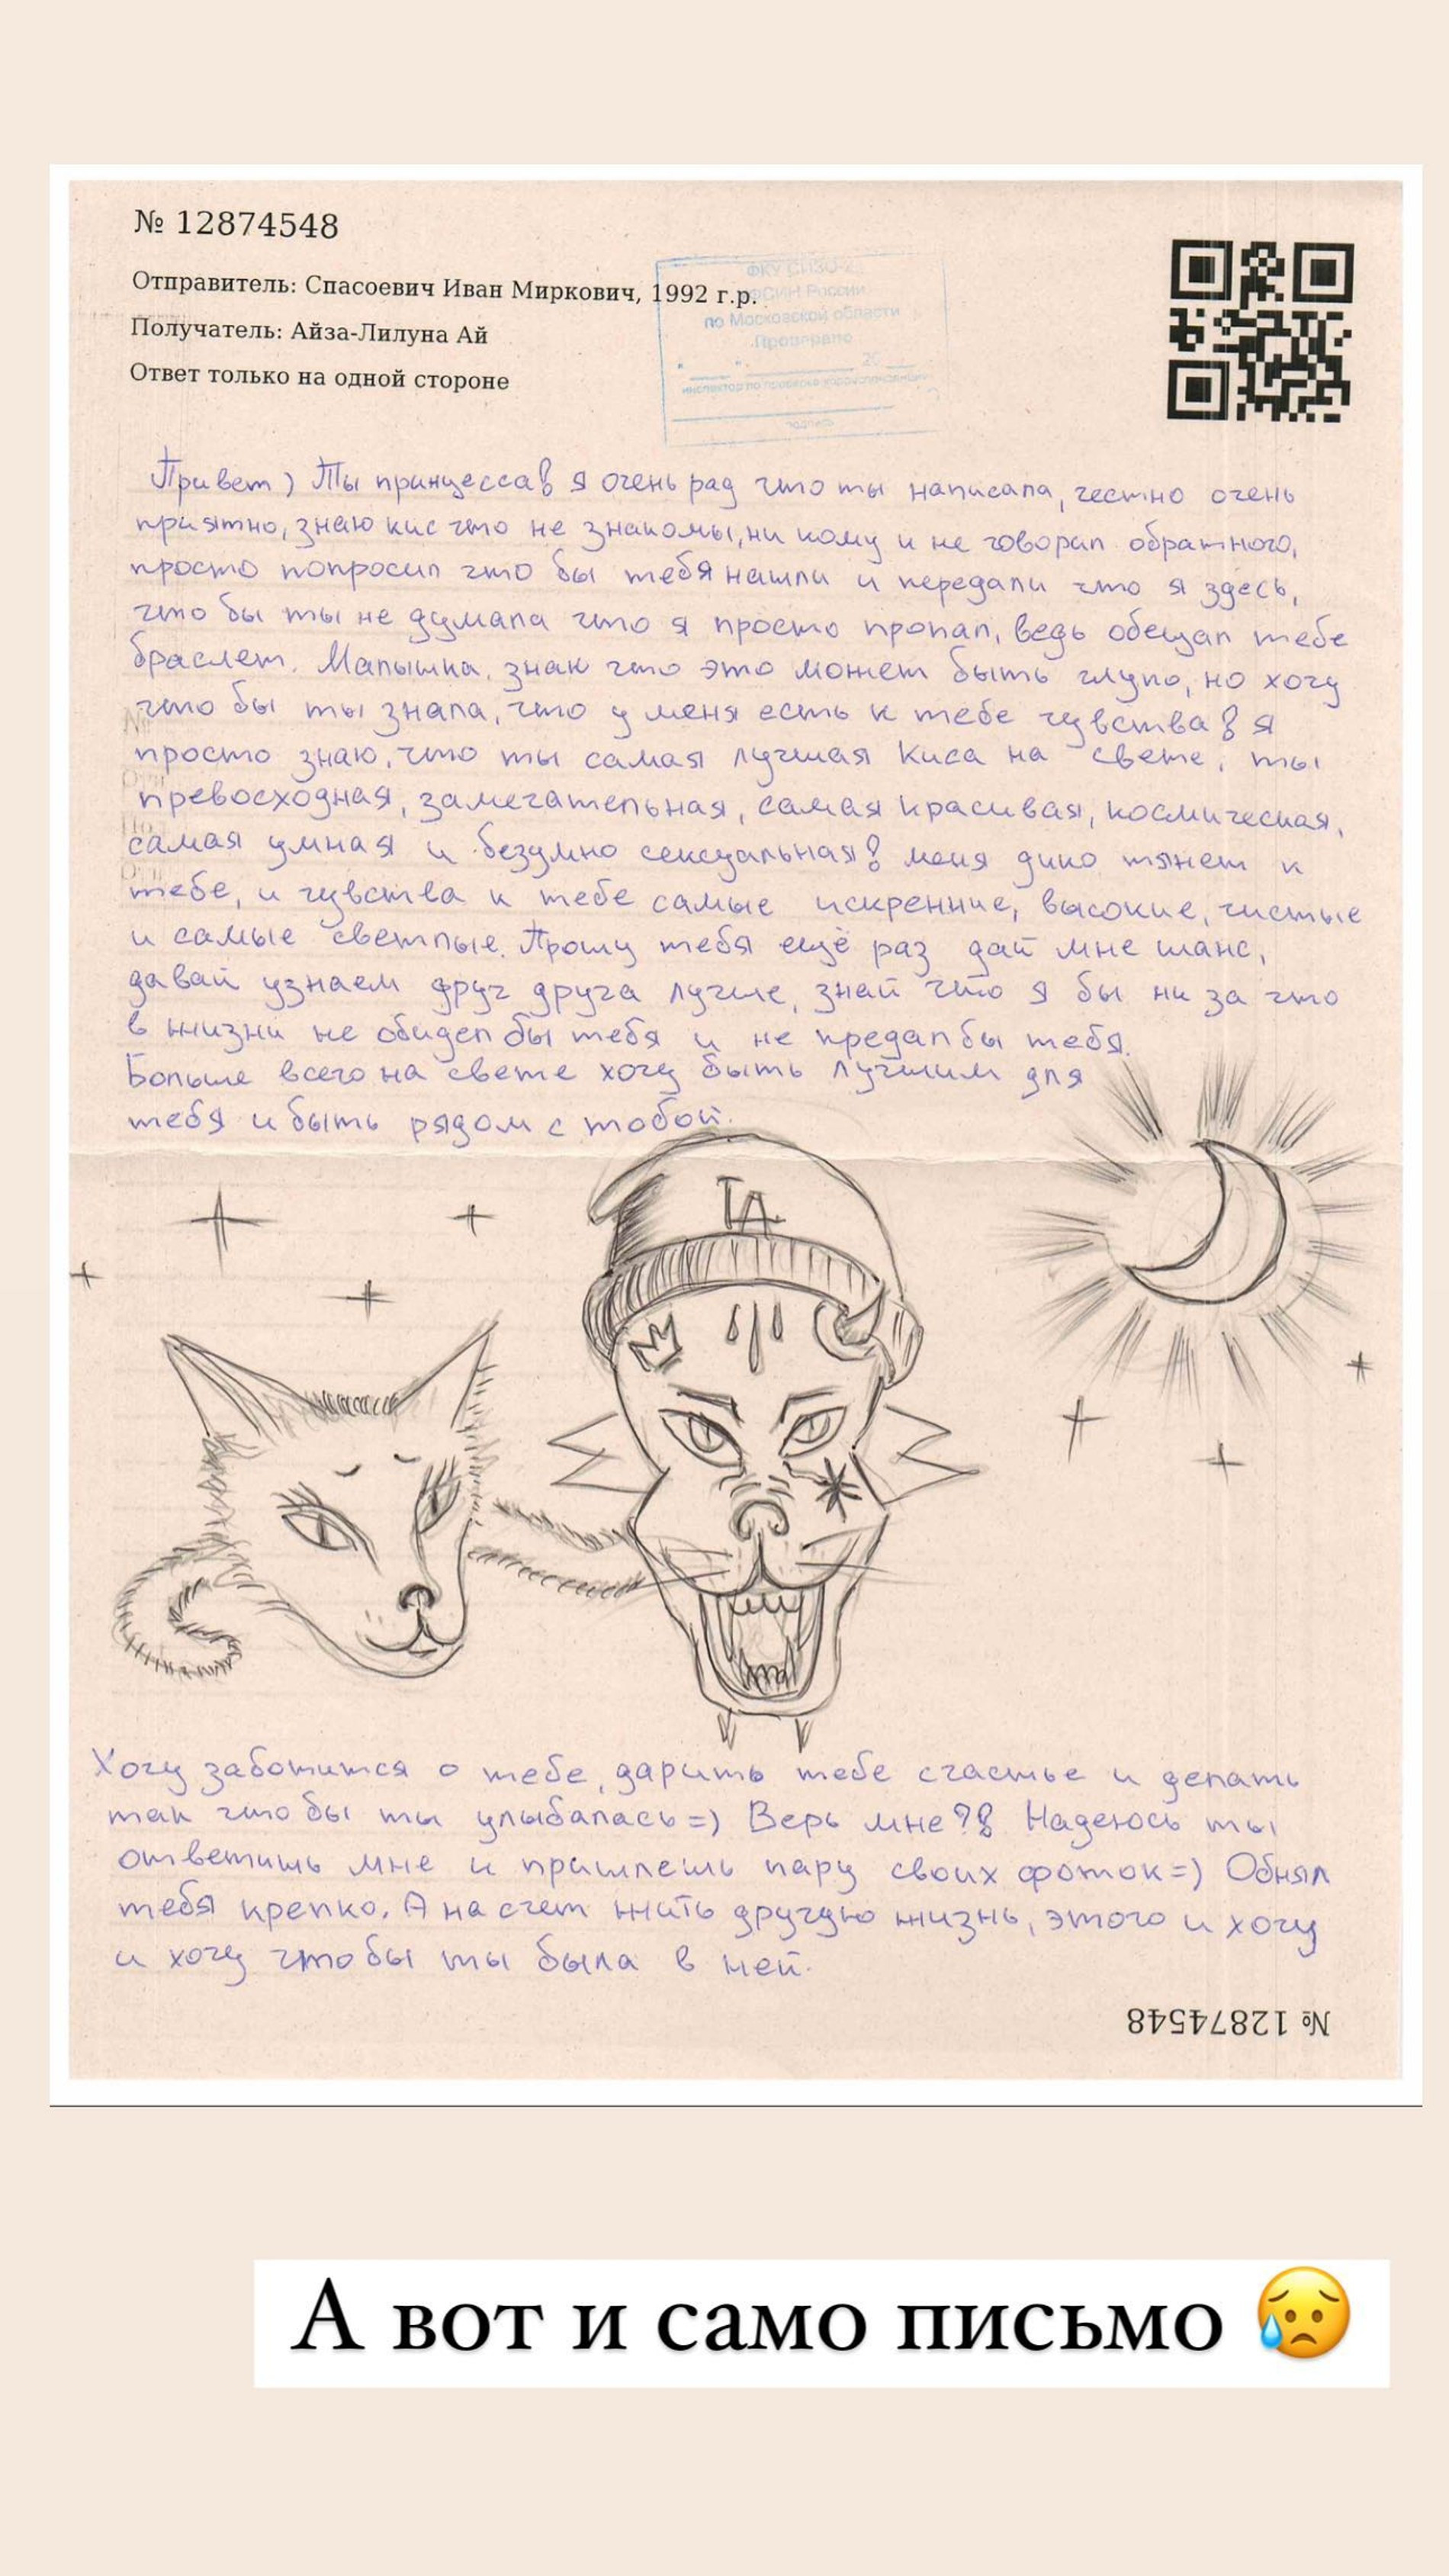 Письмо поклонника Айзы из тюрьмы
Фото: Инстаграм* @aizalovesam